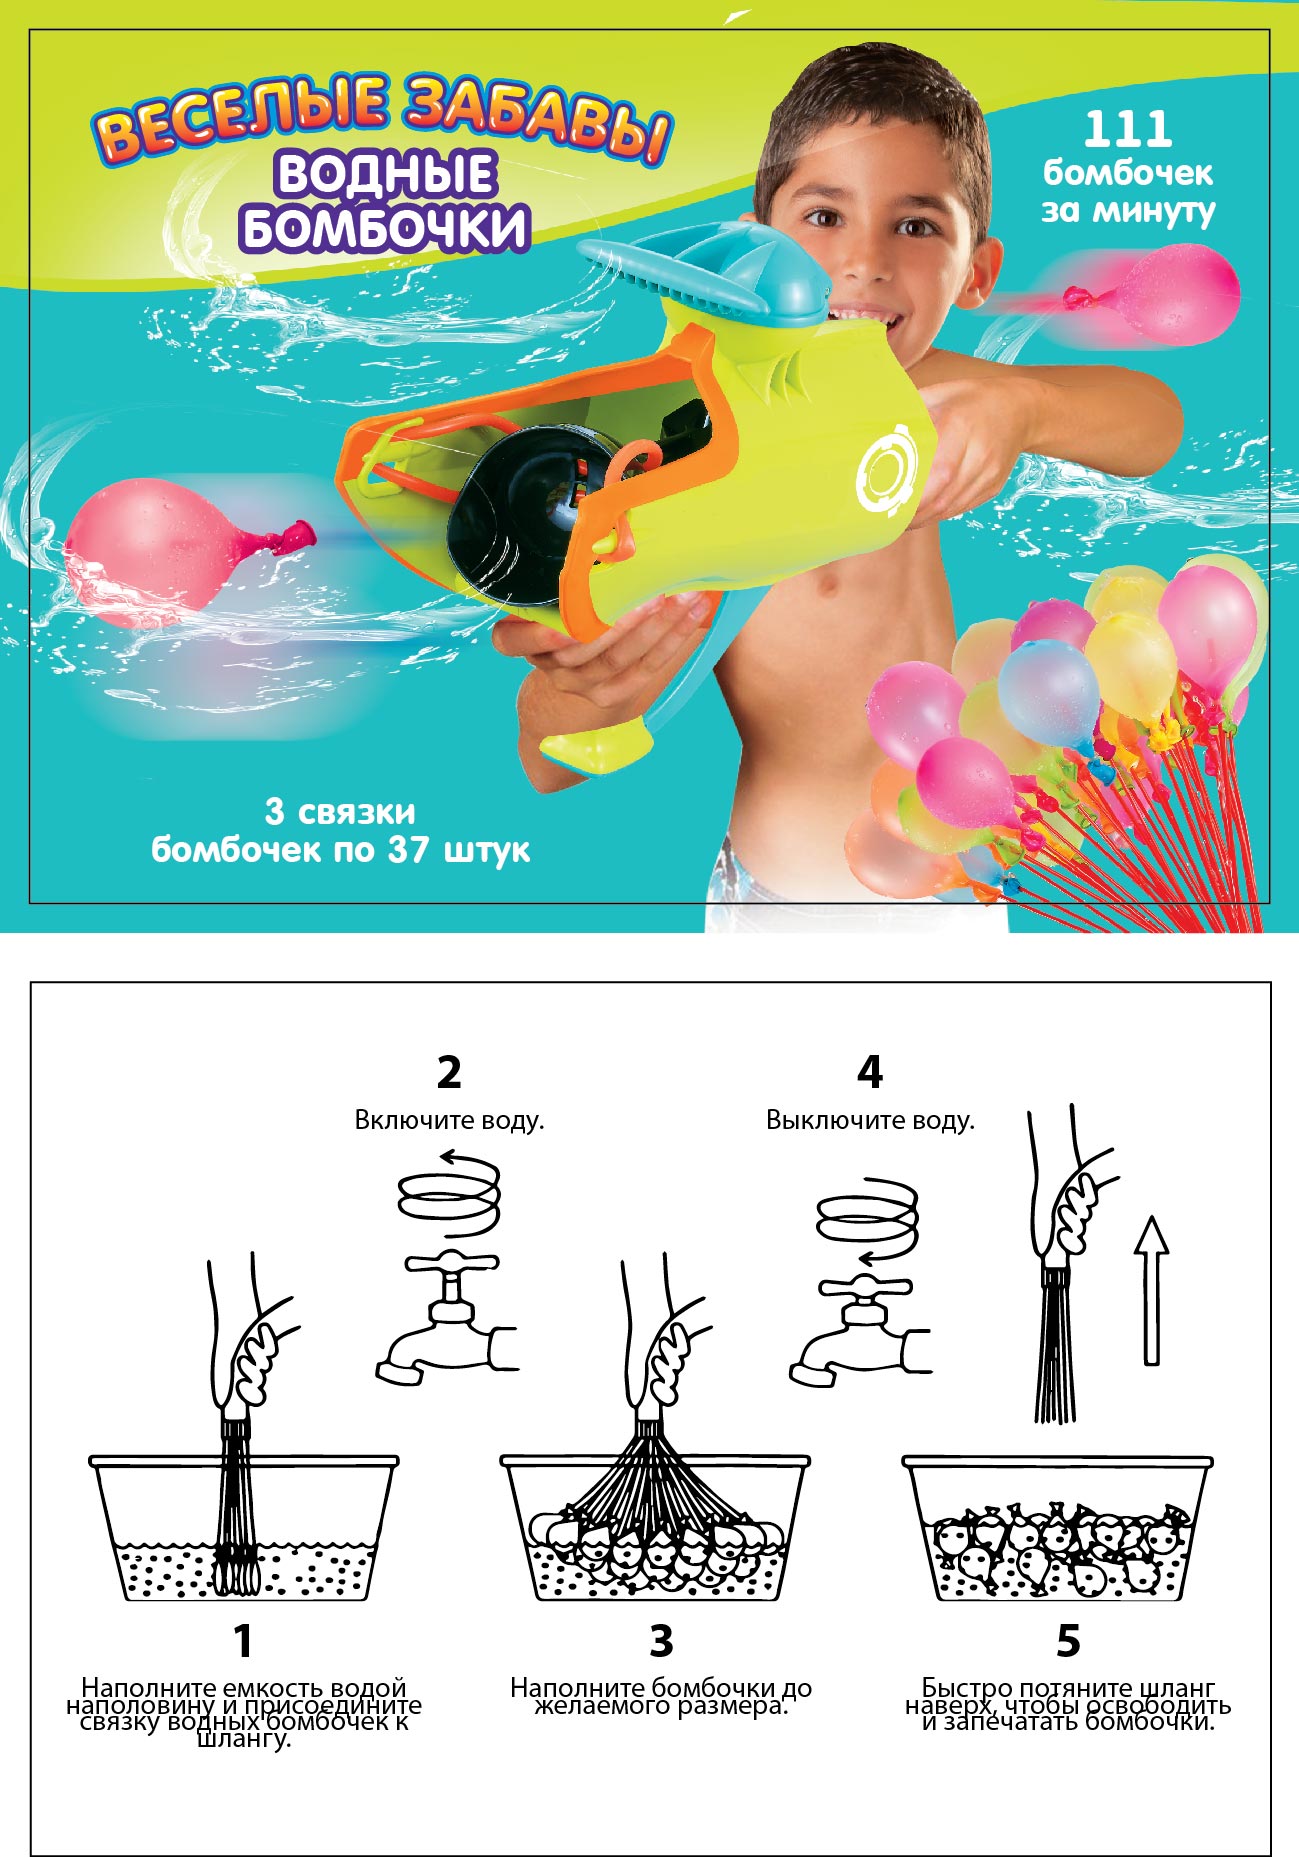 Бластер для запуска водных бомбочек и мячей 3 в 1 Веселые забавы, 2 вида PT-00866 / ABtoys